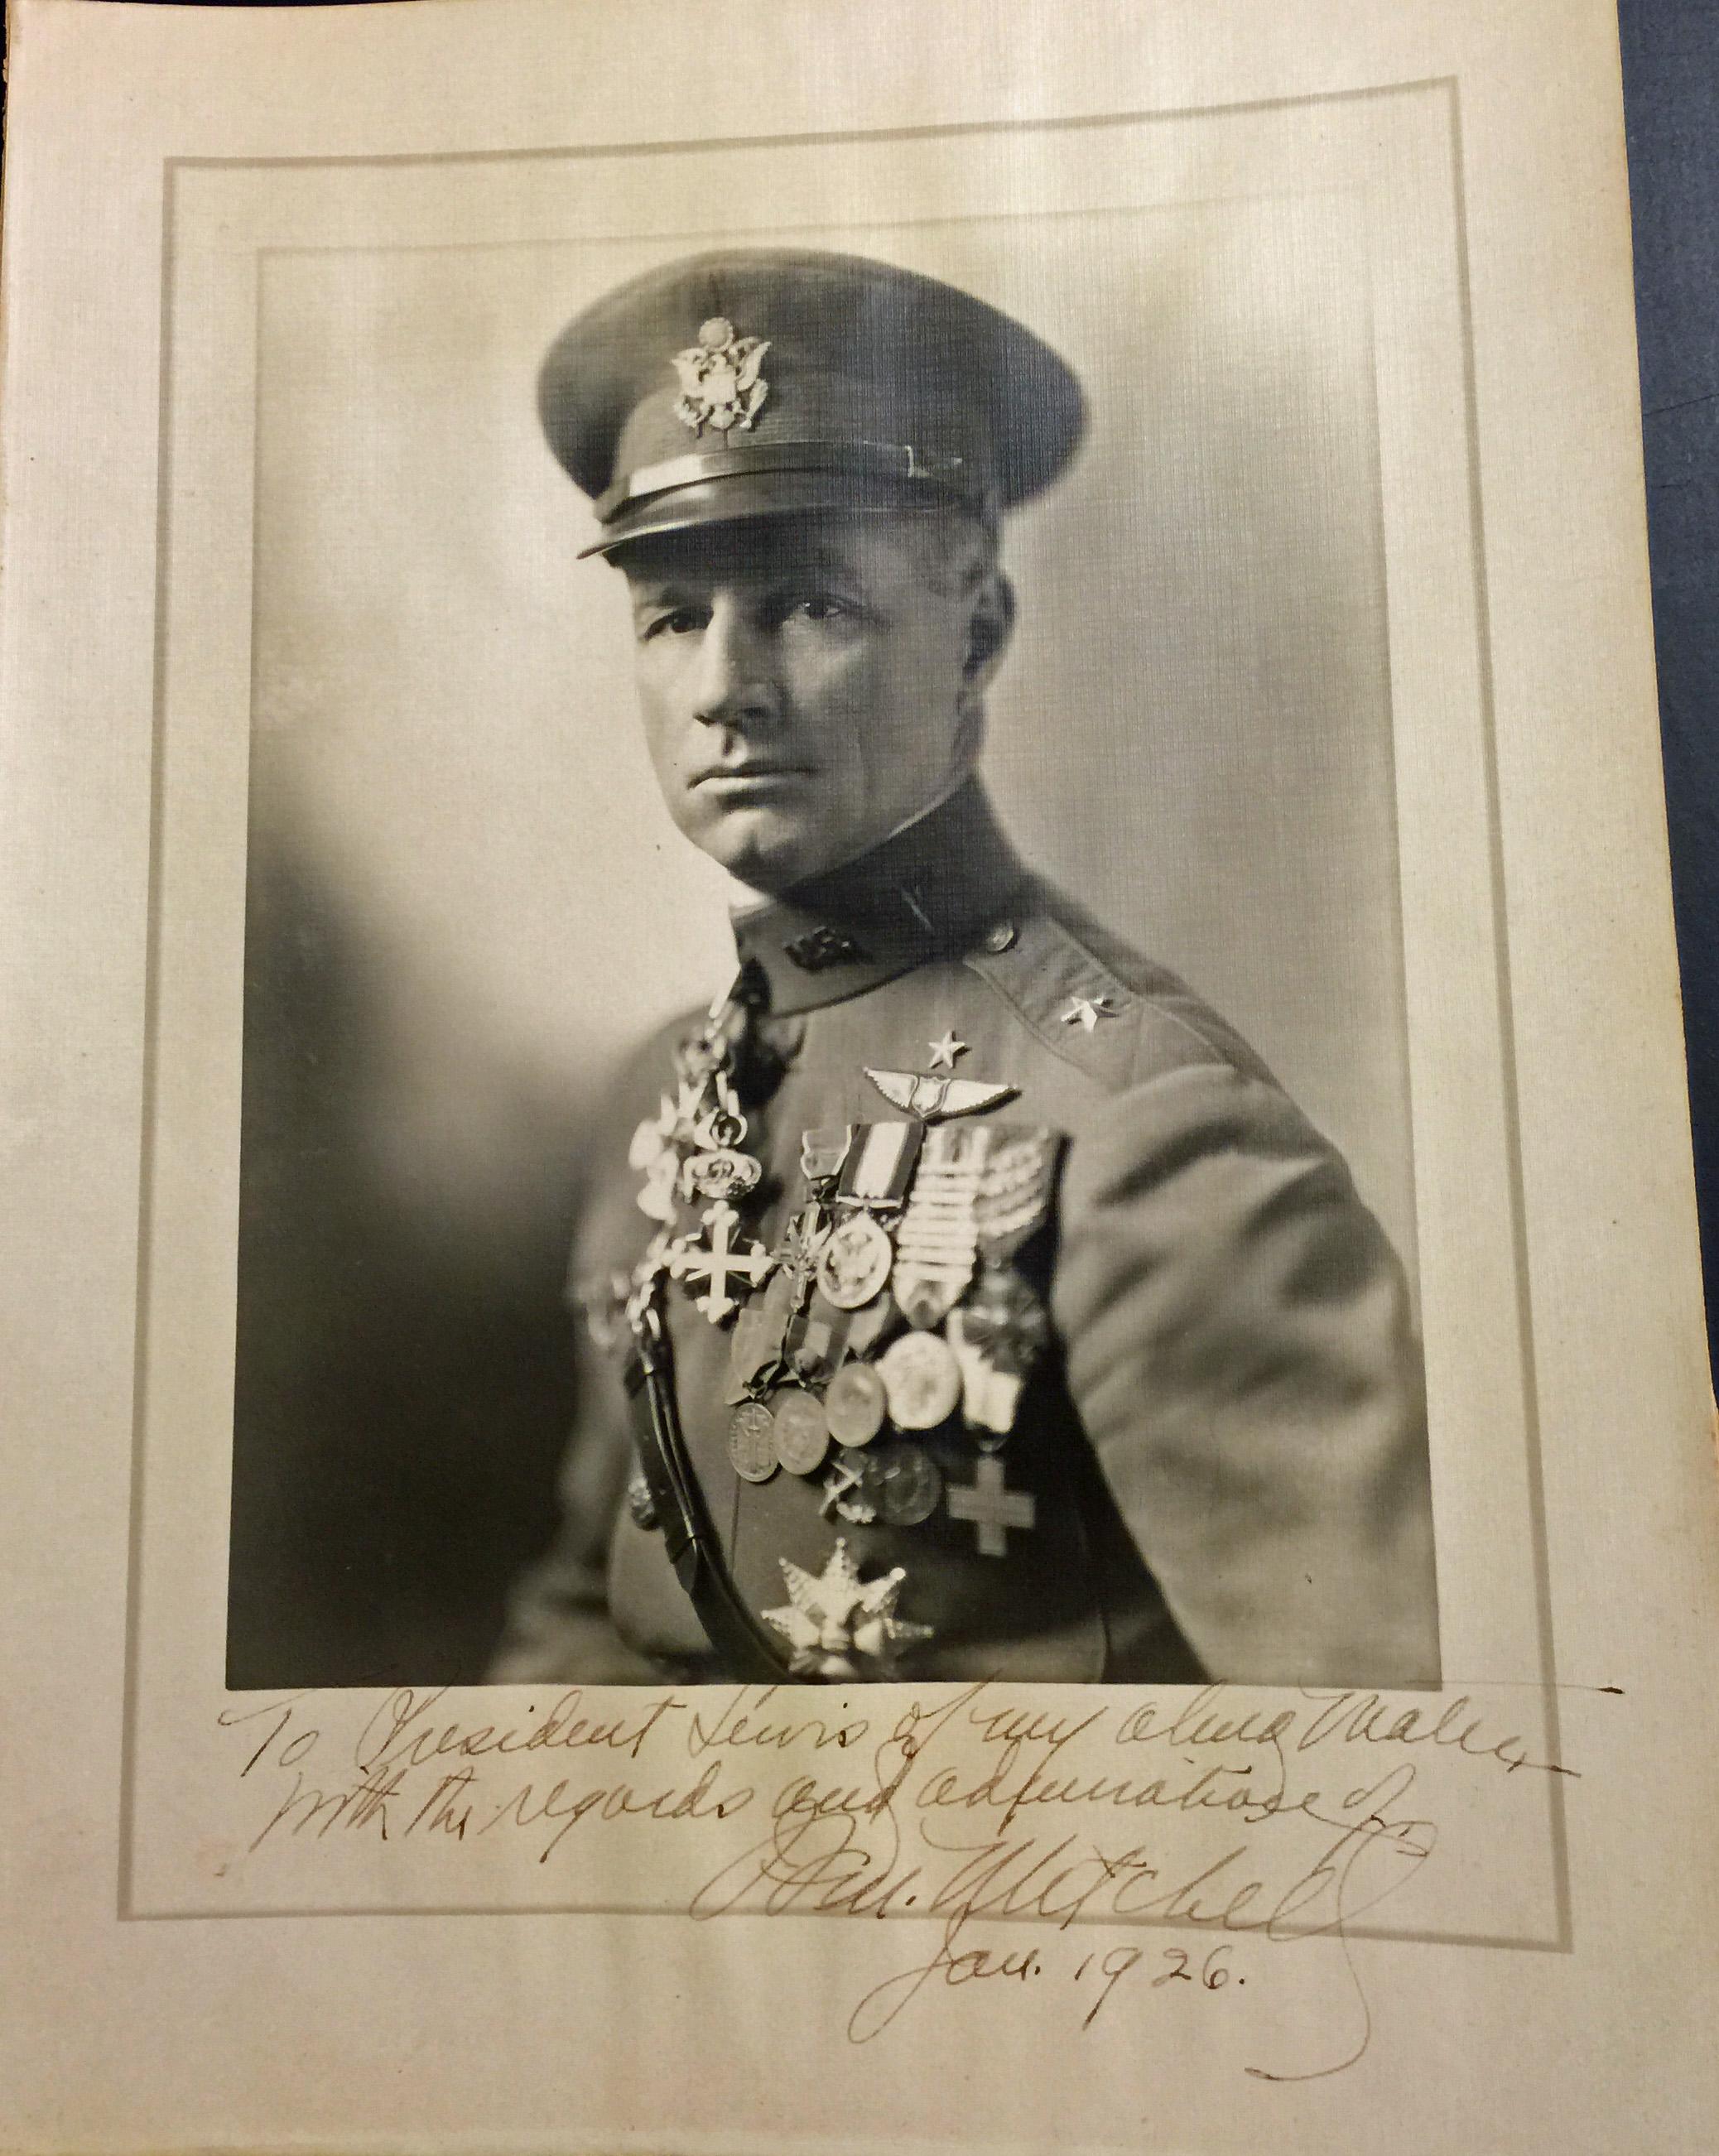 GENERAL BILLY MITCHELL - PHOTO SIGNÉE ET INSCRITE DATÉE DE JANVIER 1926 - Photograph de Unknown